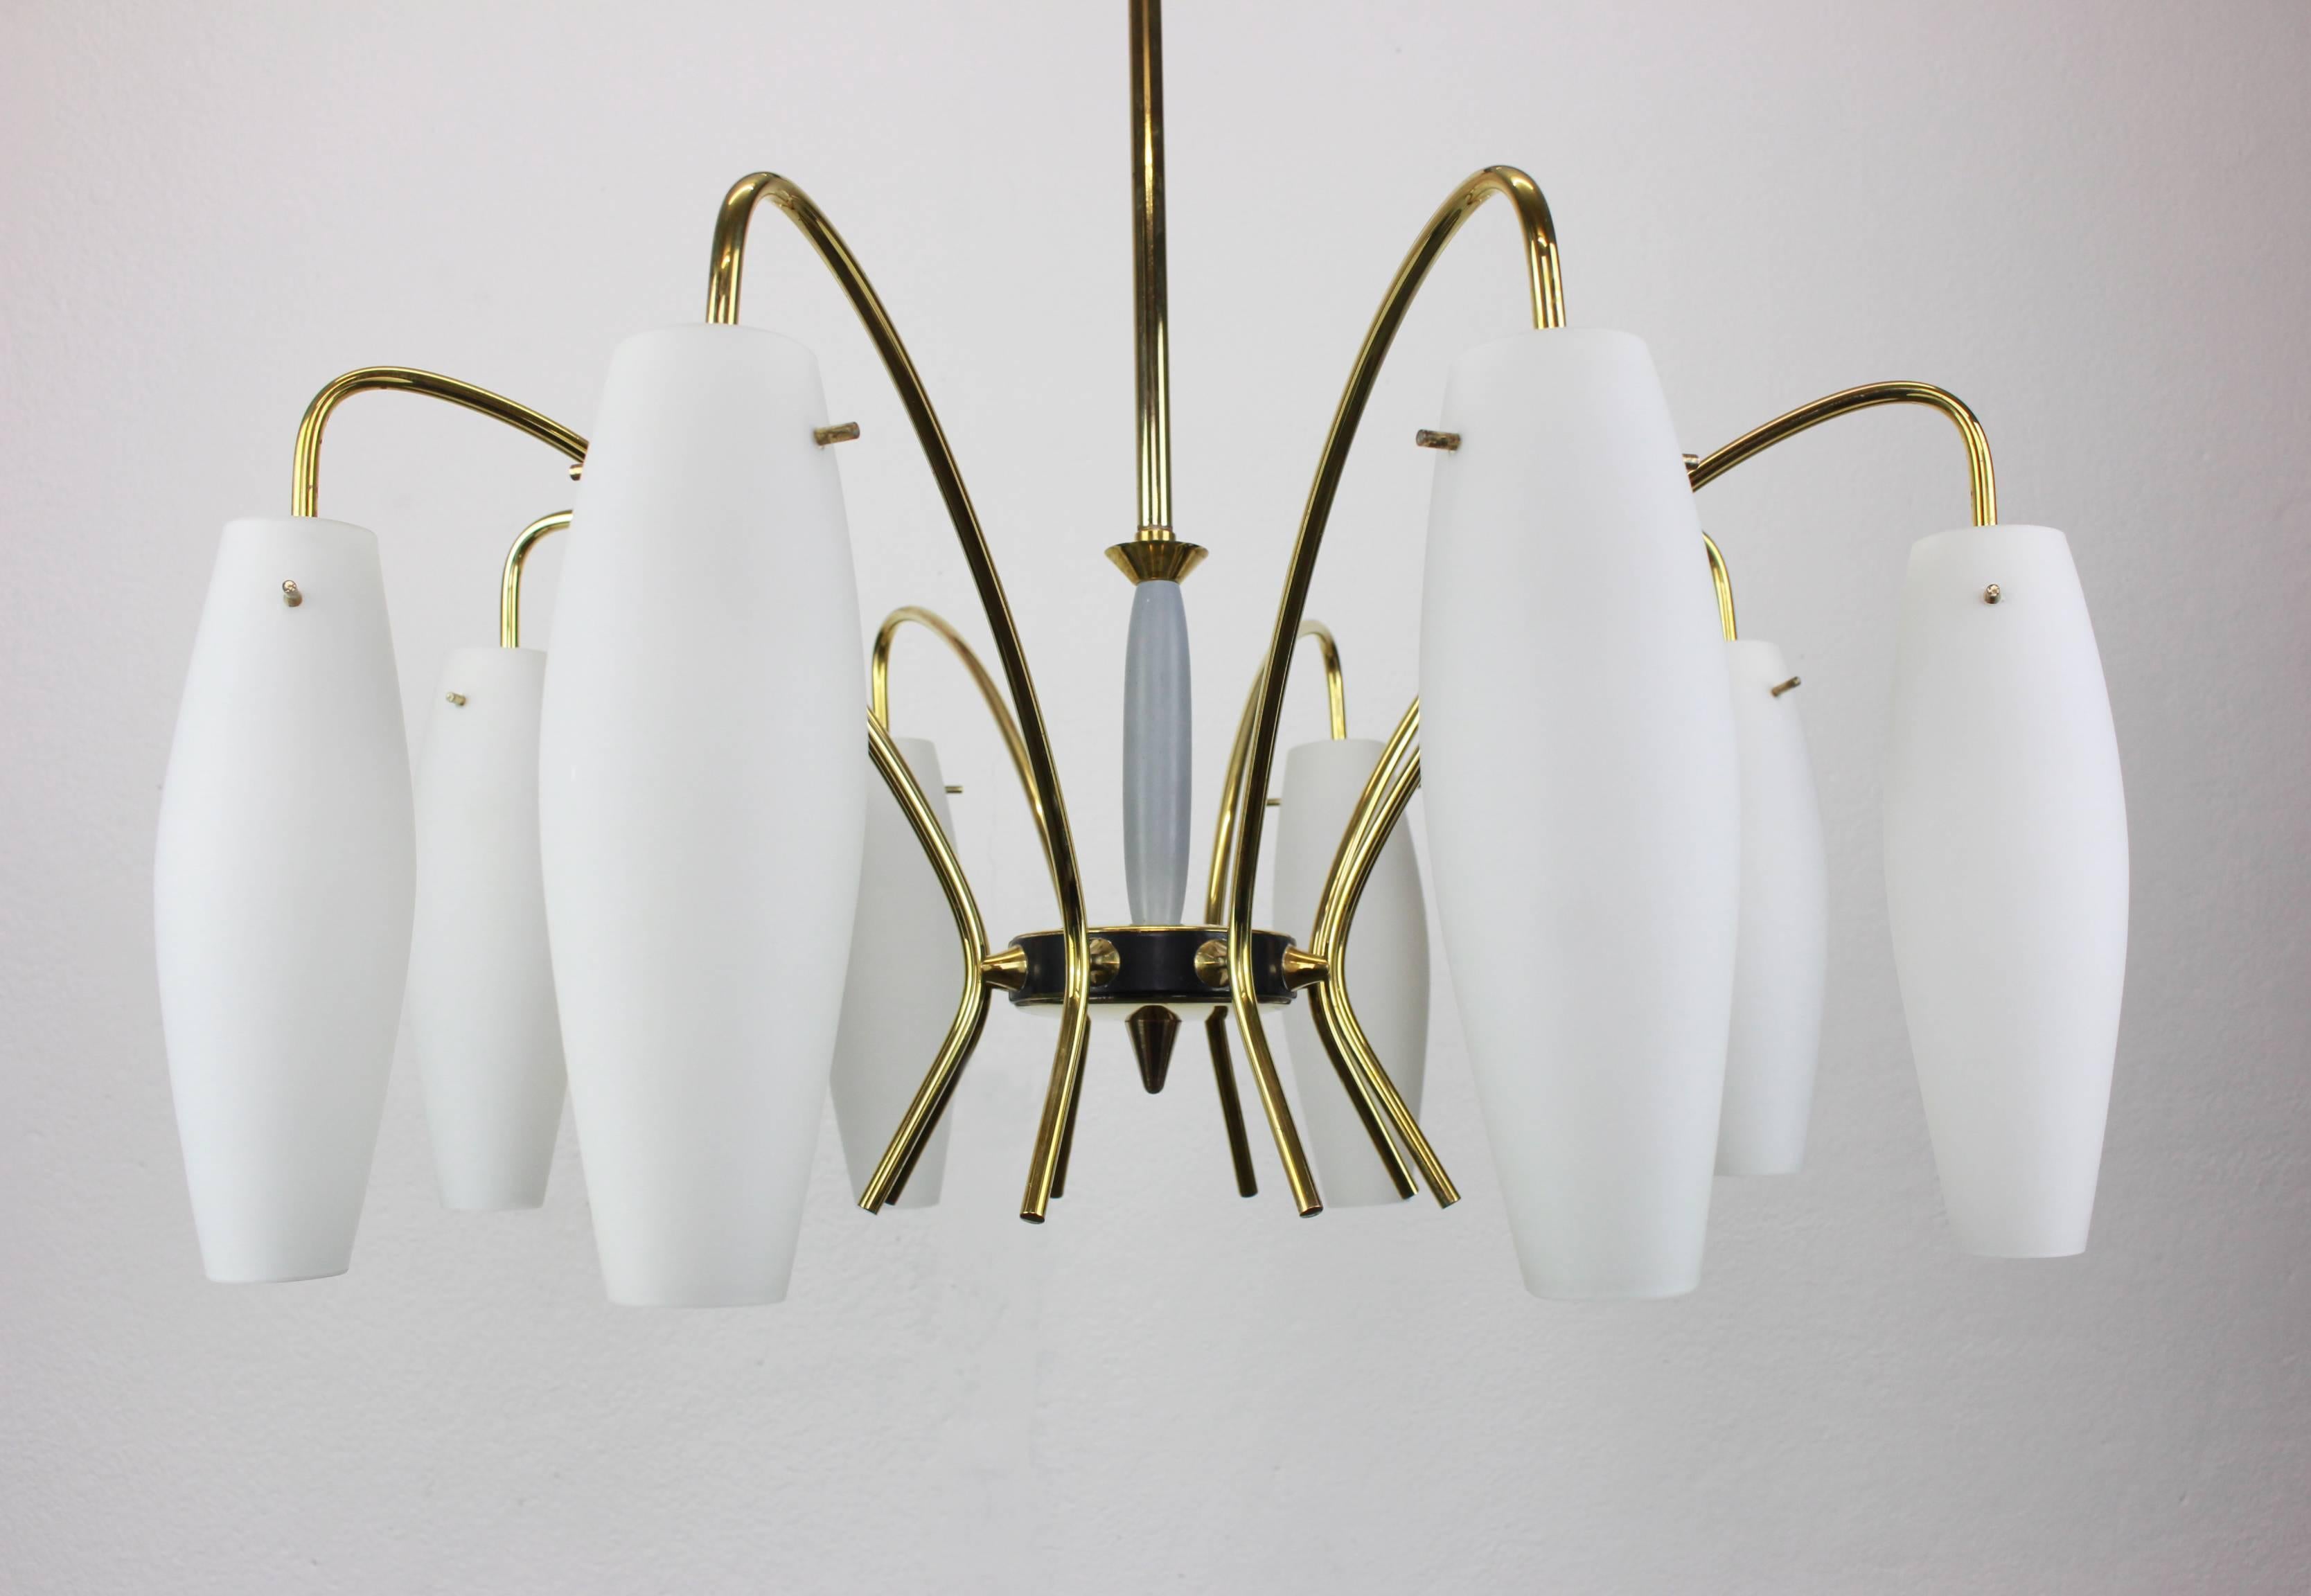 Un étonnant lustre à huit lumières à la manière de Stilnovo, Italie, fabriqué vers 1950-1959. Une pièce faite à la main et de grande qualité.

De haute qualité et en très bon état. Nettoyé, bien câblé et prêt à être utilisé. 

Le luminaire